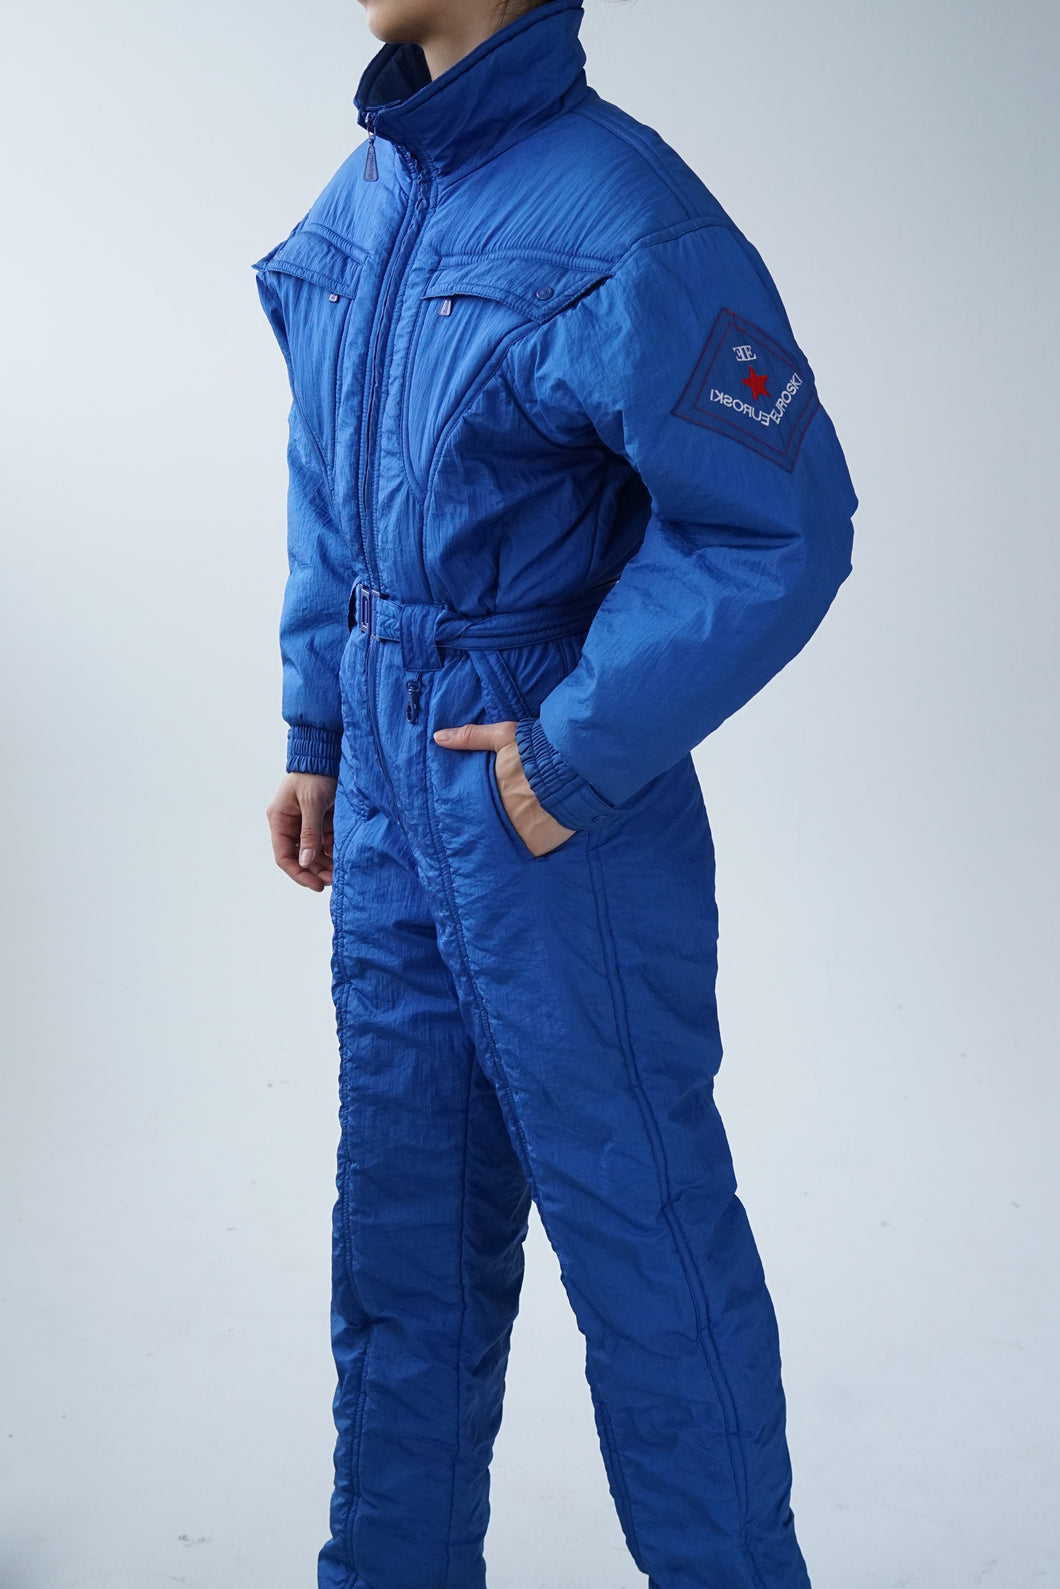 One piece vintage Euroski ski suit, snow suit bleu métallique unisex taille 14 (M)